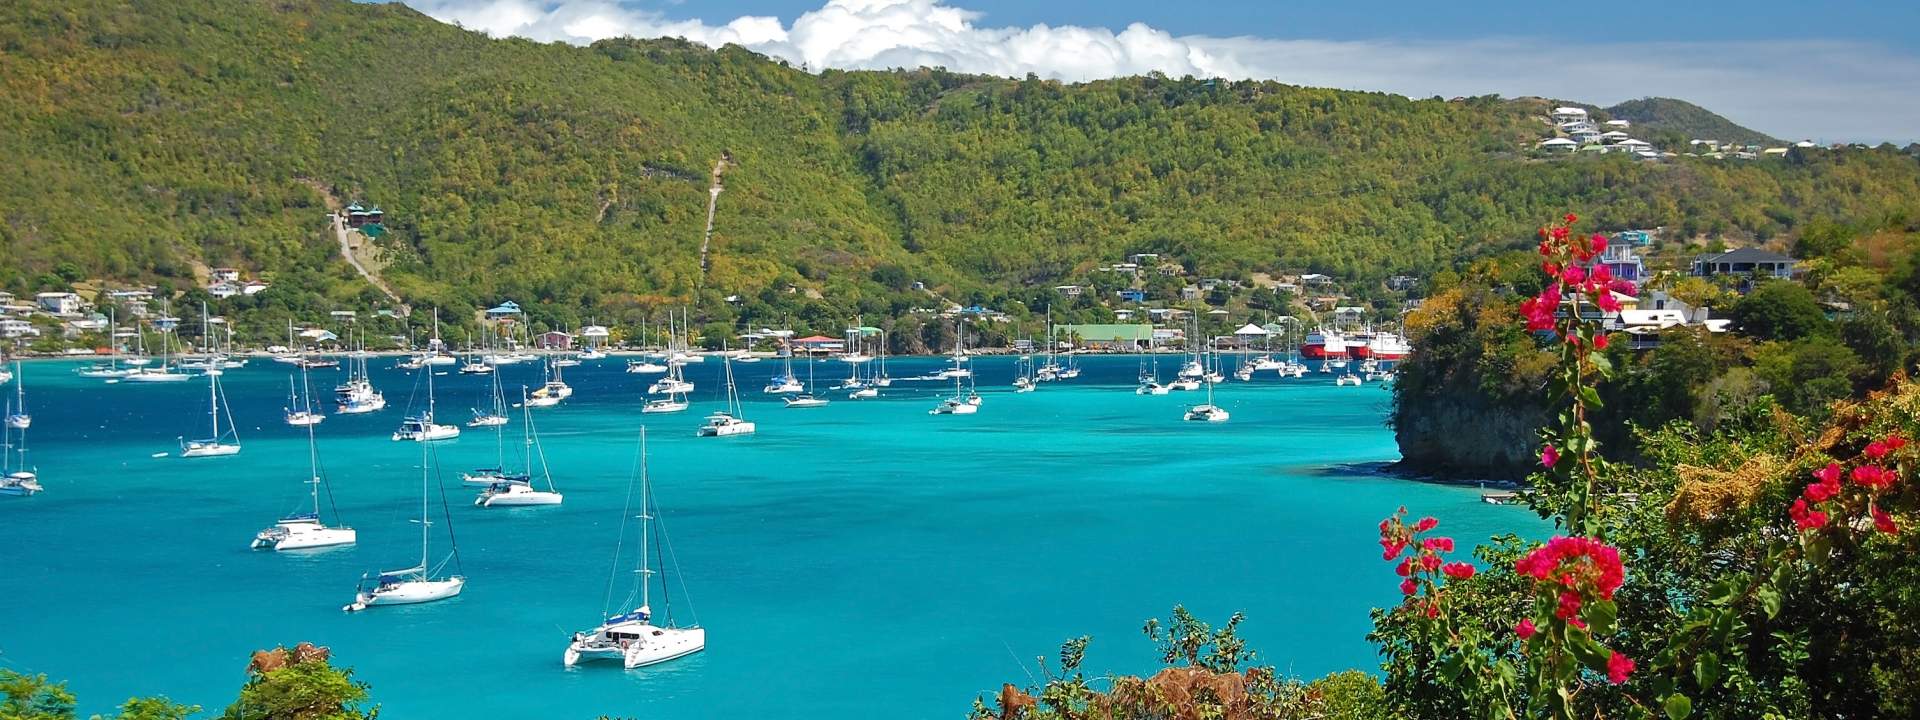 Naviguez aux Grenadines à bord d'un catamaran dernière génération !